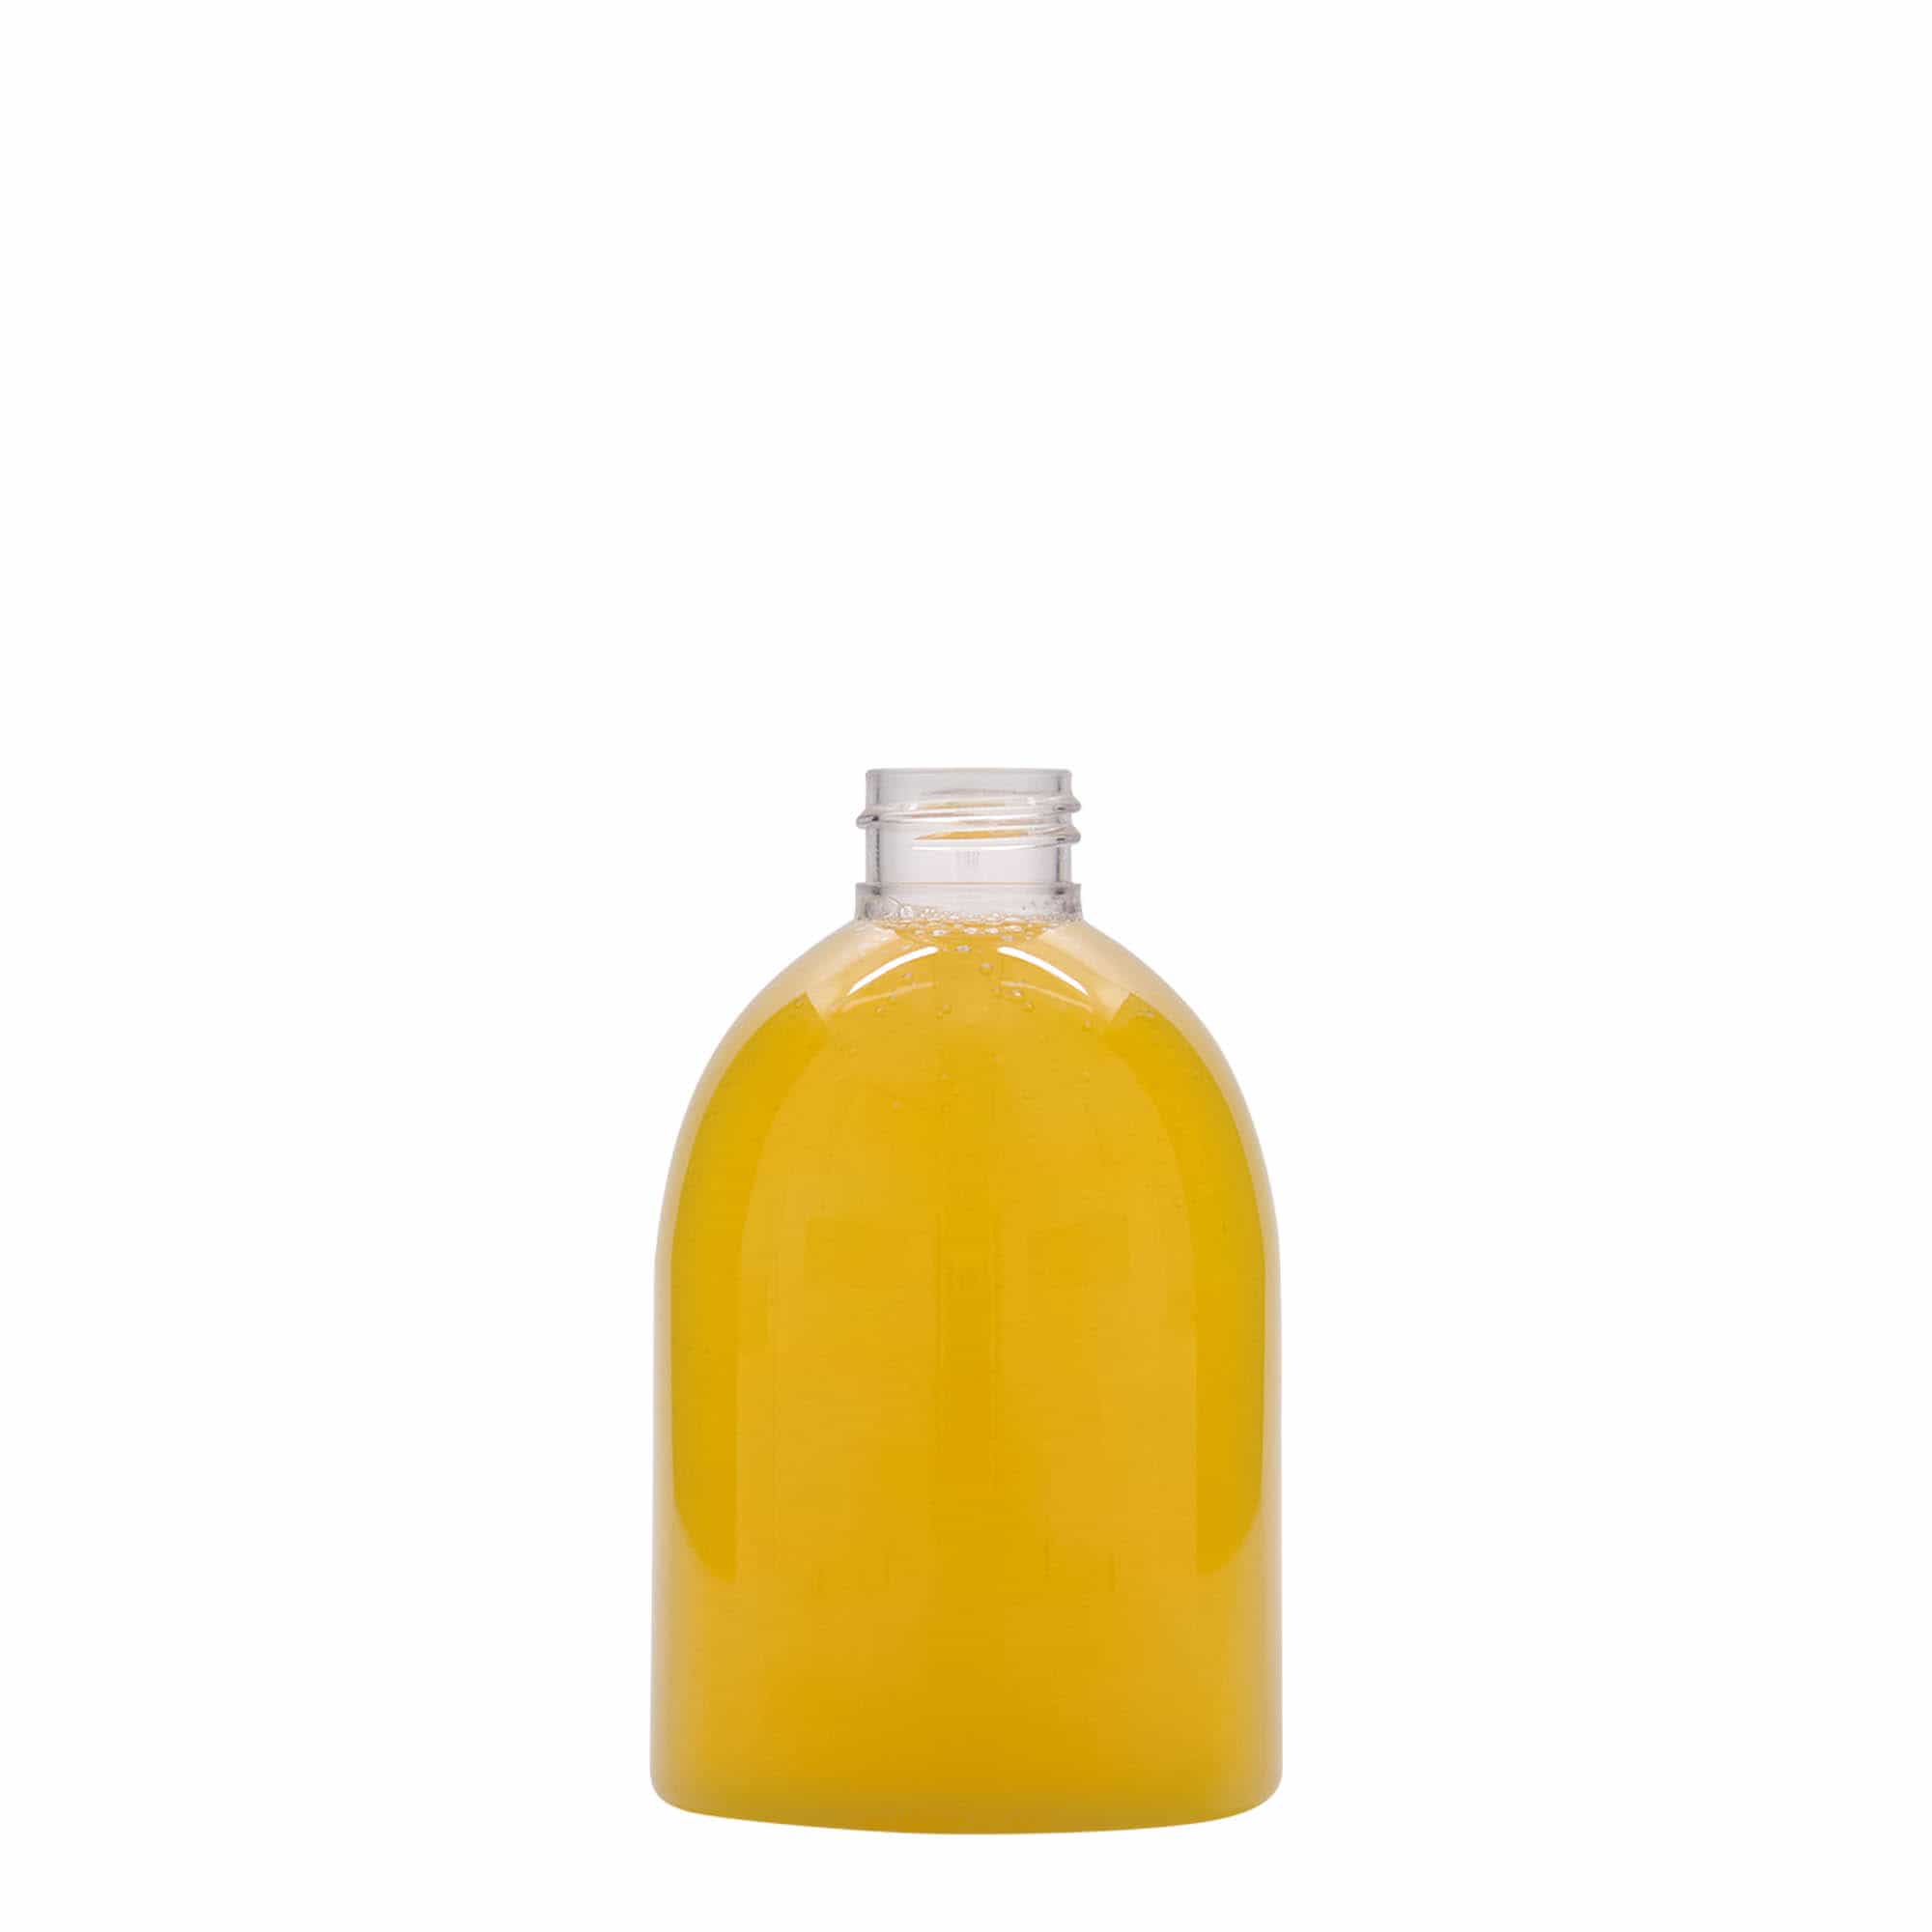 PET lahev 250 ml 'Alexa', plast, ústí: GPI 24/410